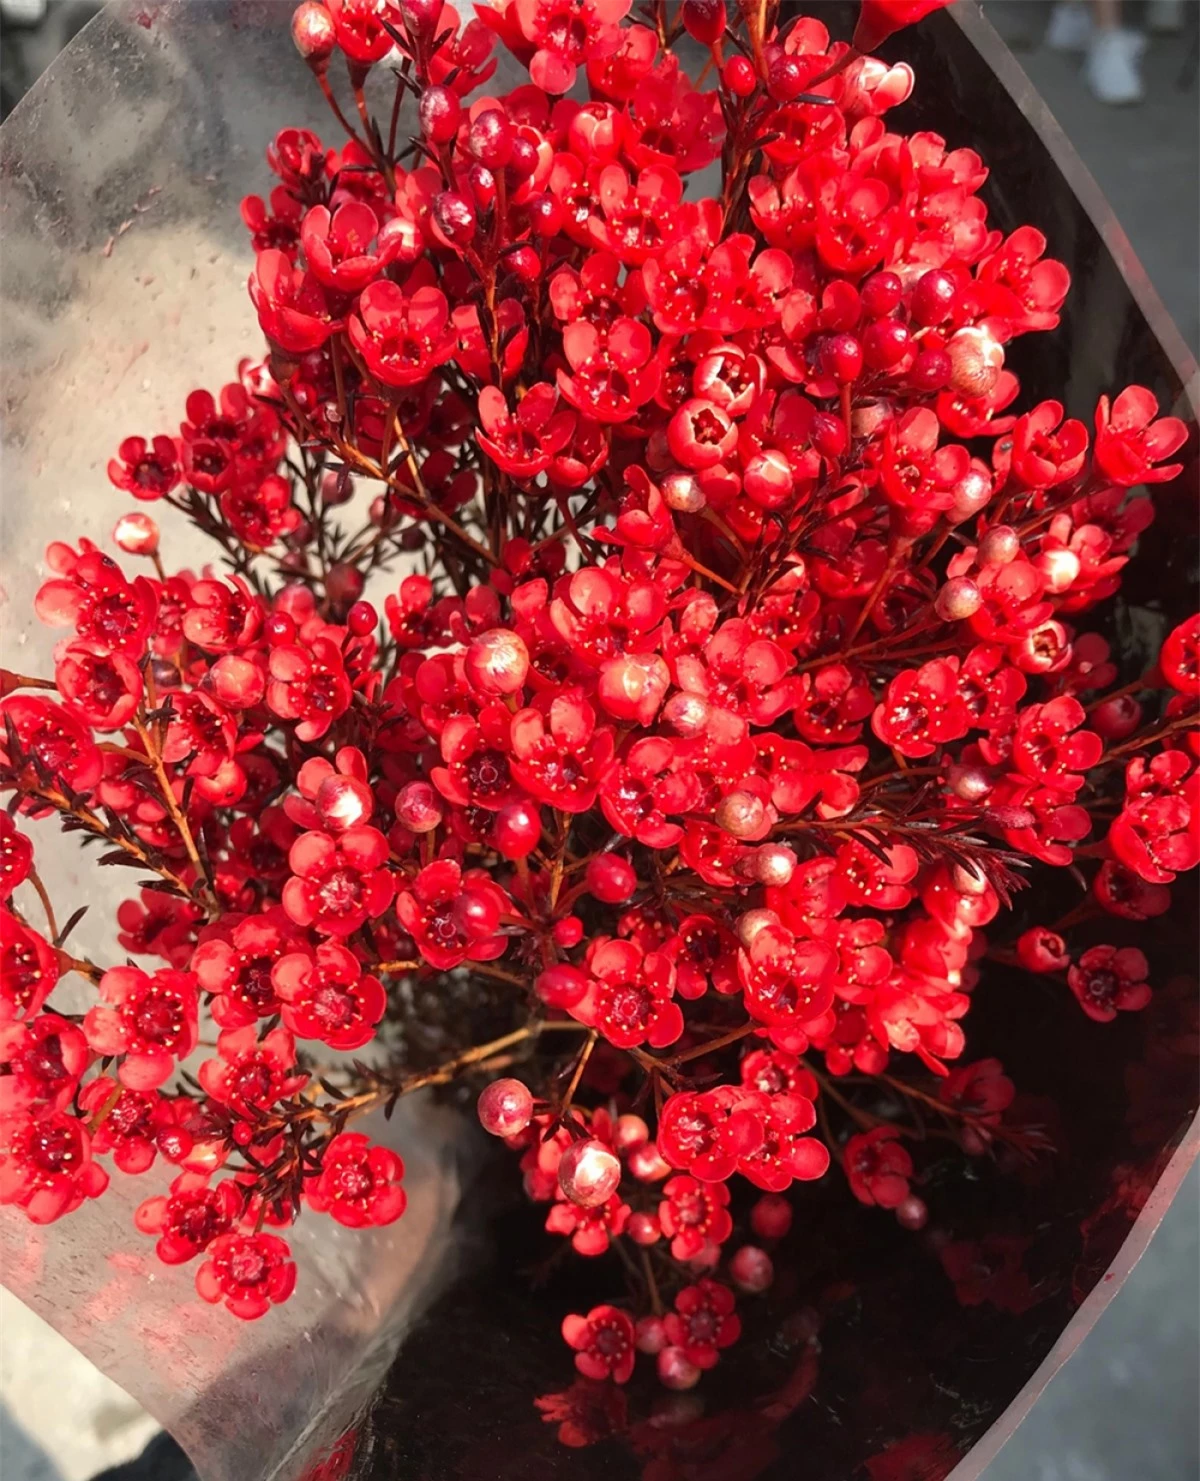 Hầu hết các loại hoa thanh liễu được bán tại thị trường Việt Nam hiện nay đều là hoa nhập khẩu.